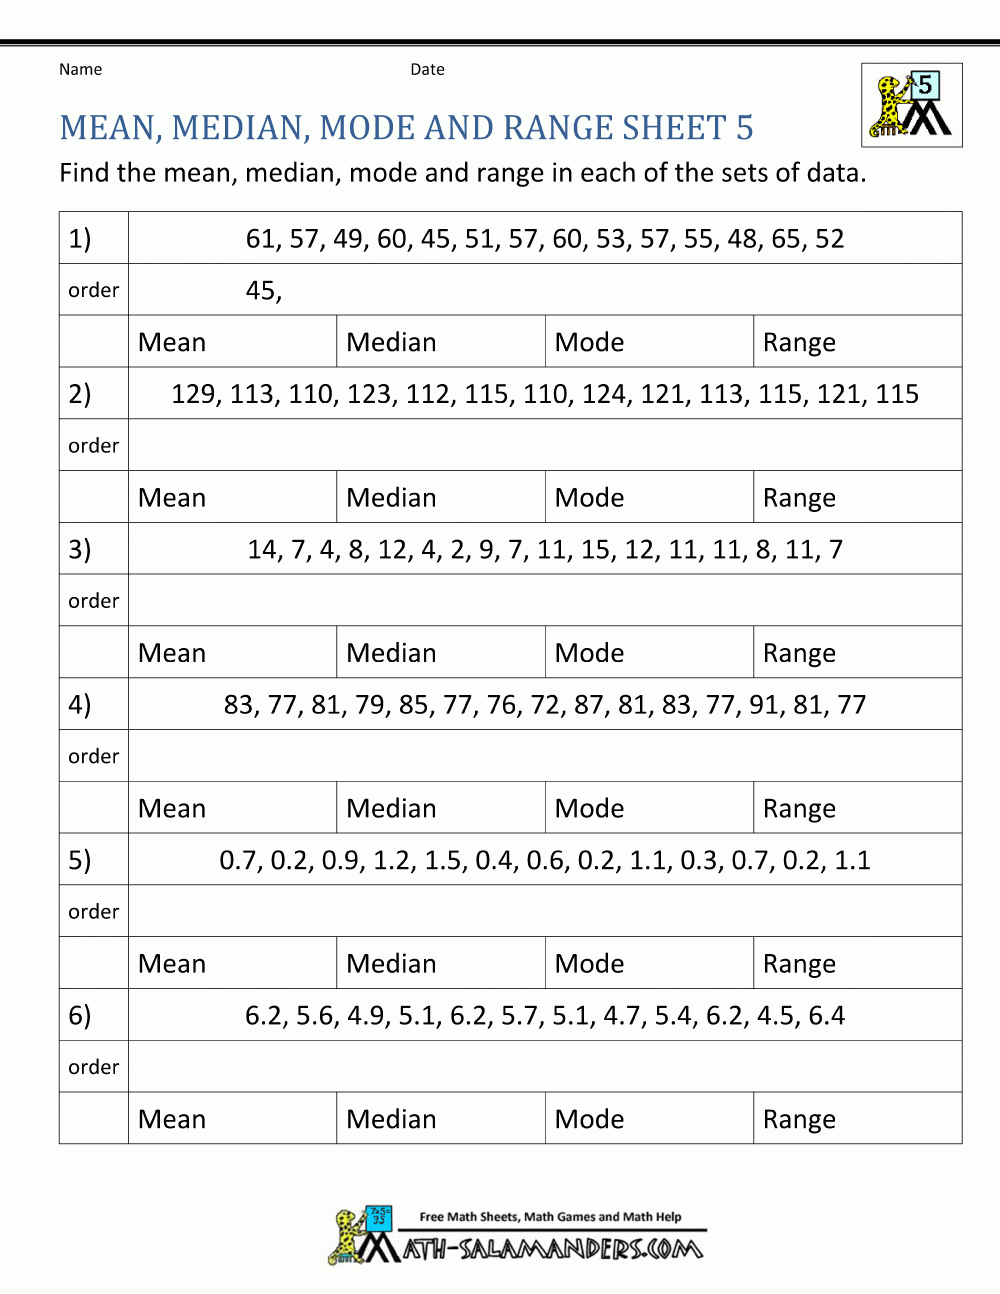 Mean Median Mode Range Worksheets Or Mean Median Mode Range Worksheets Pdf